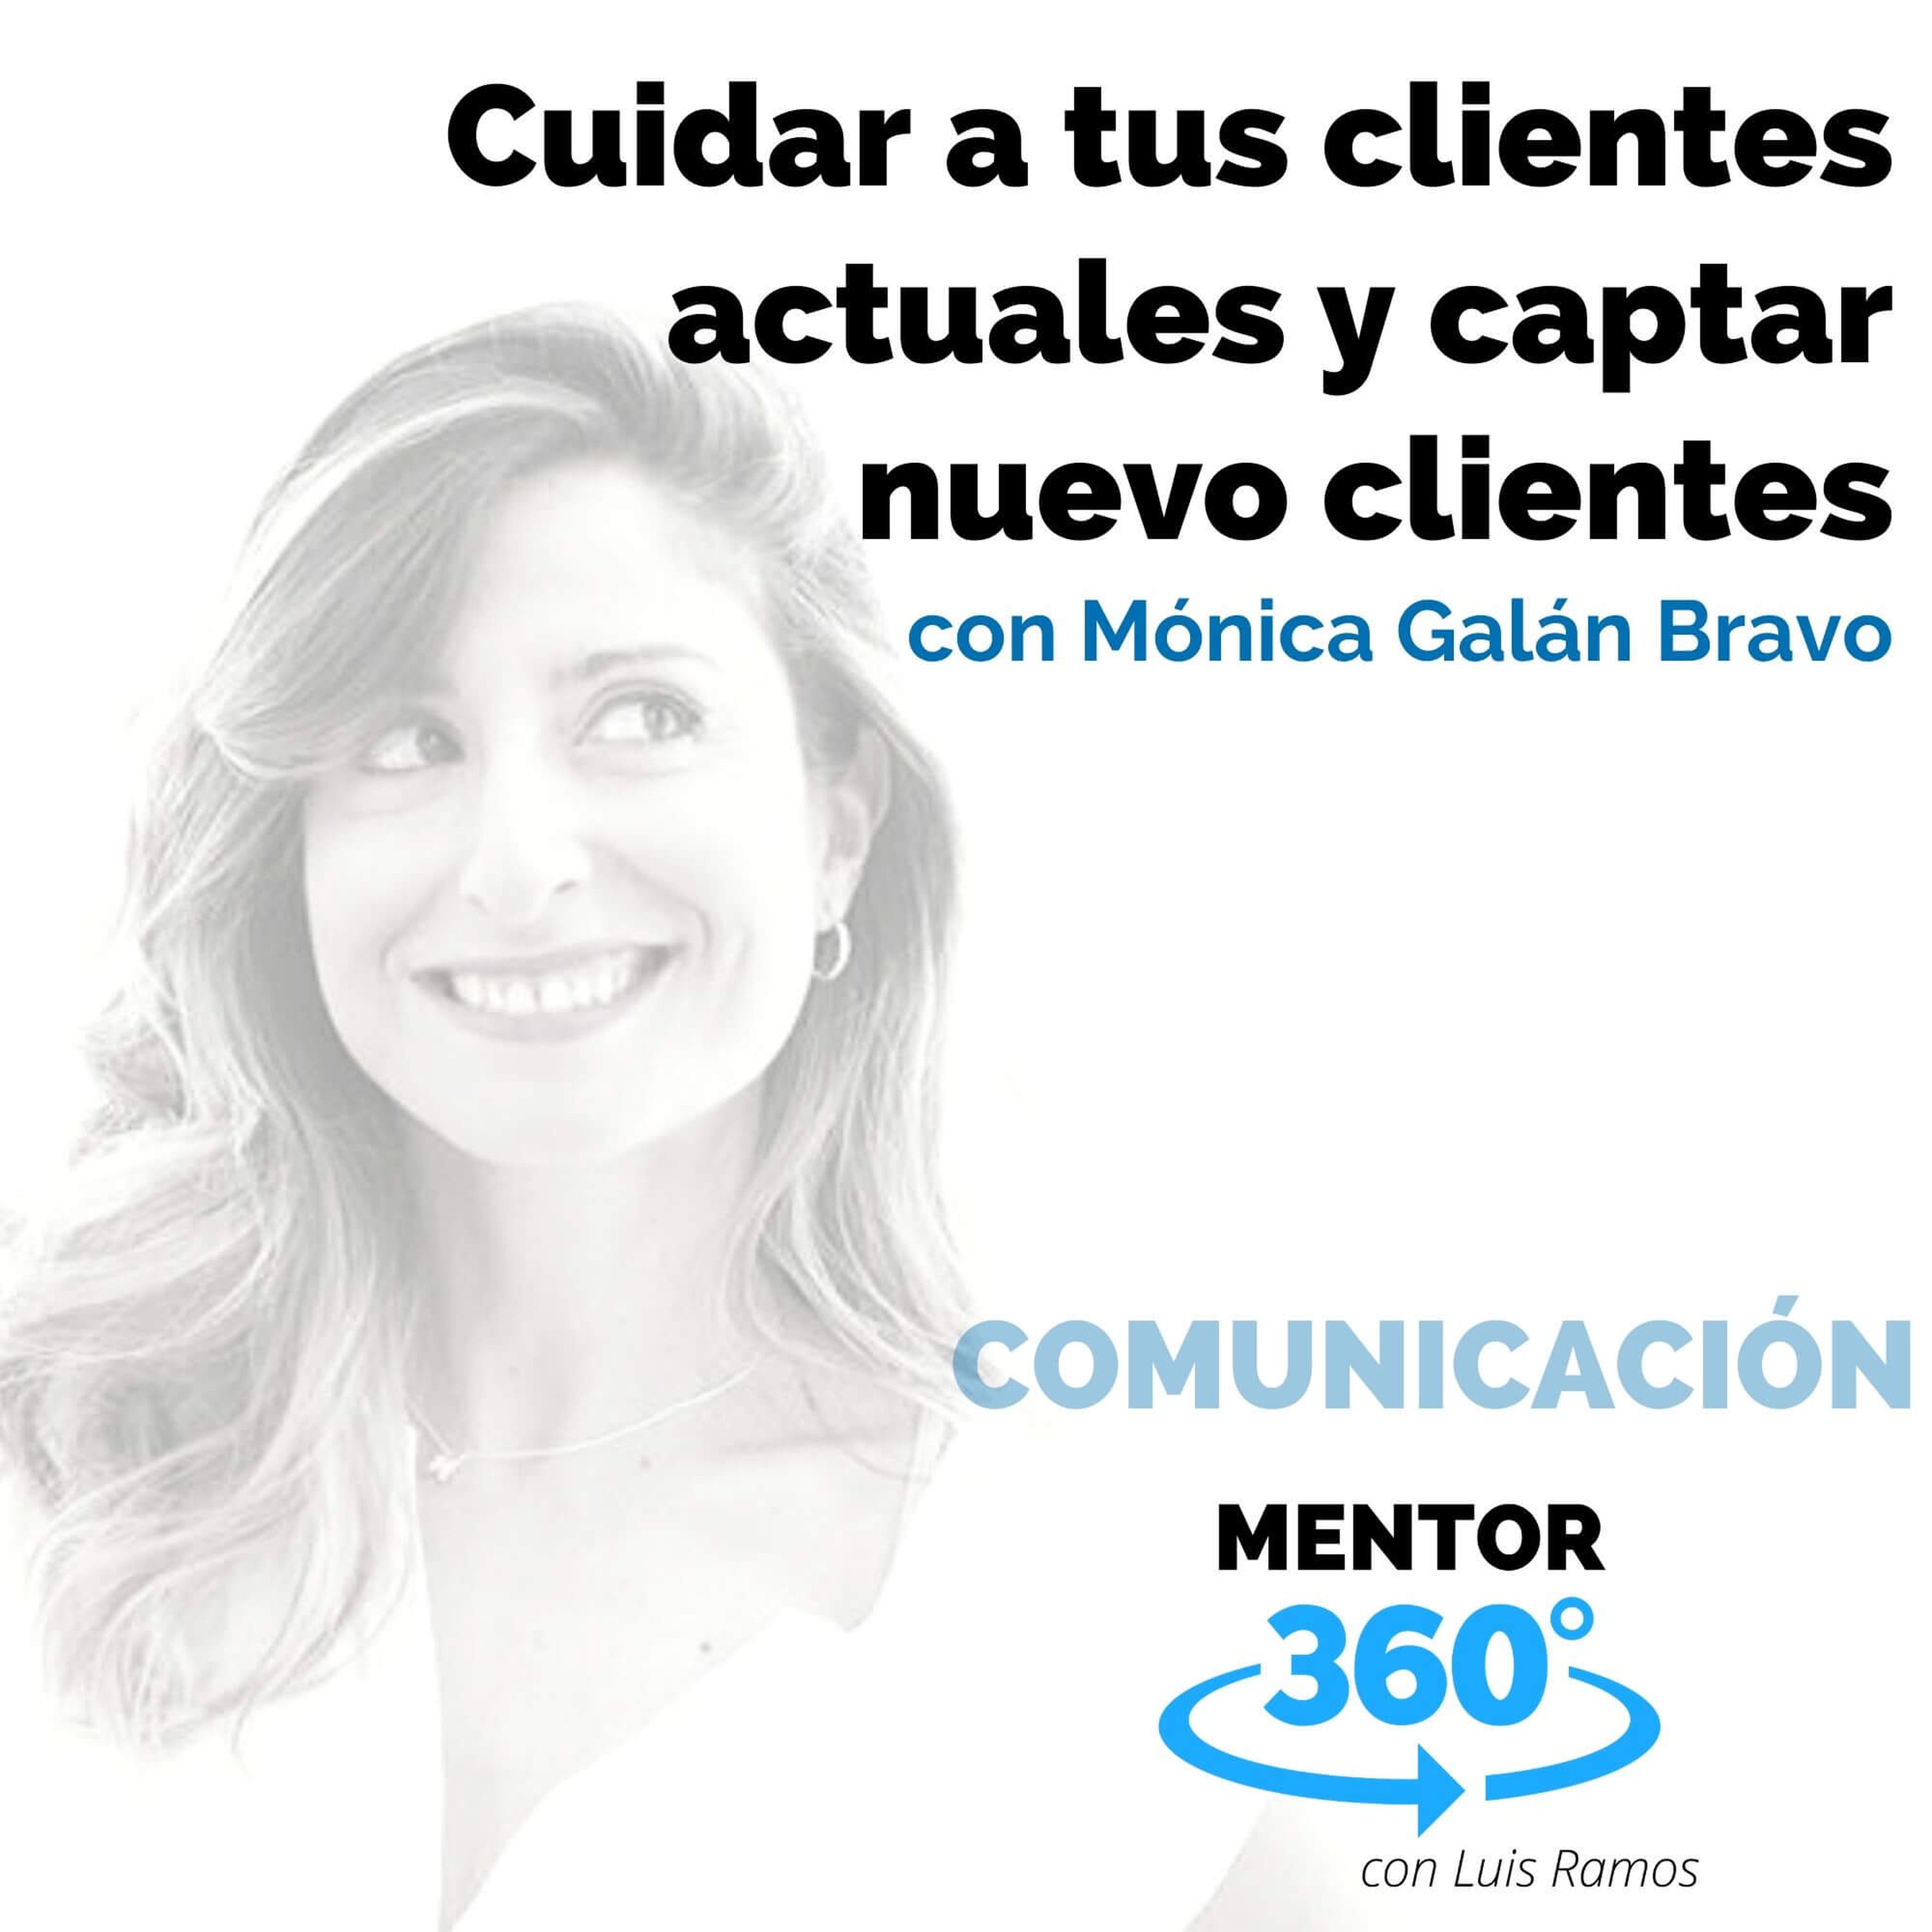 Cuidar a tus clientes actuales y captar nuevos clientes, con Mónica Galán Bravo - COMUNICACIÓN